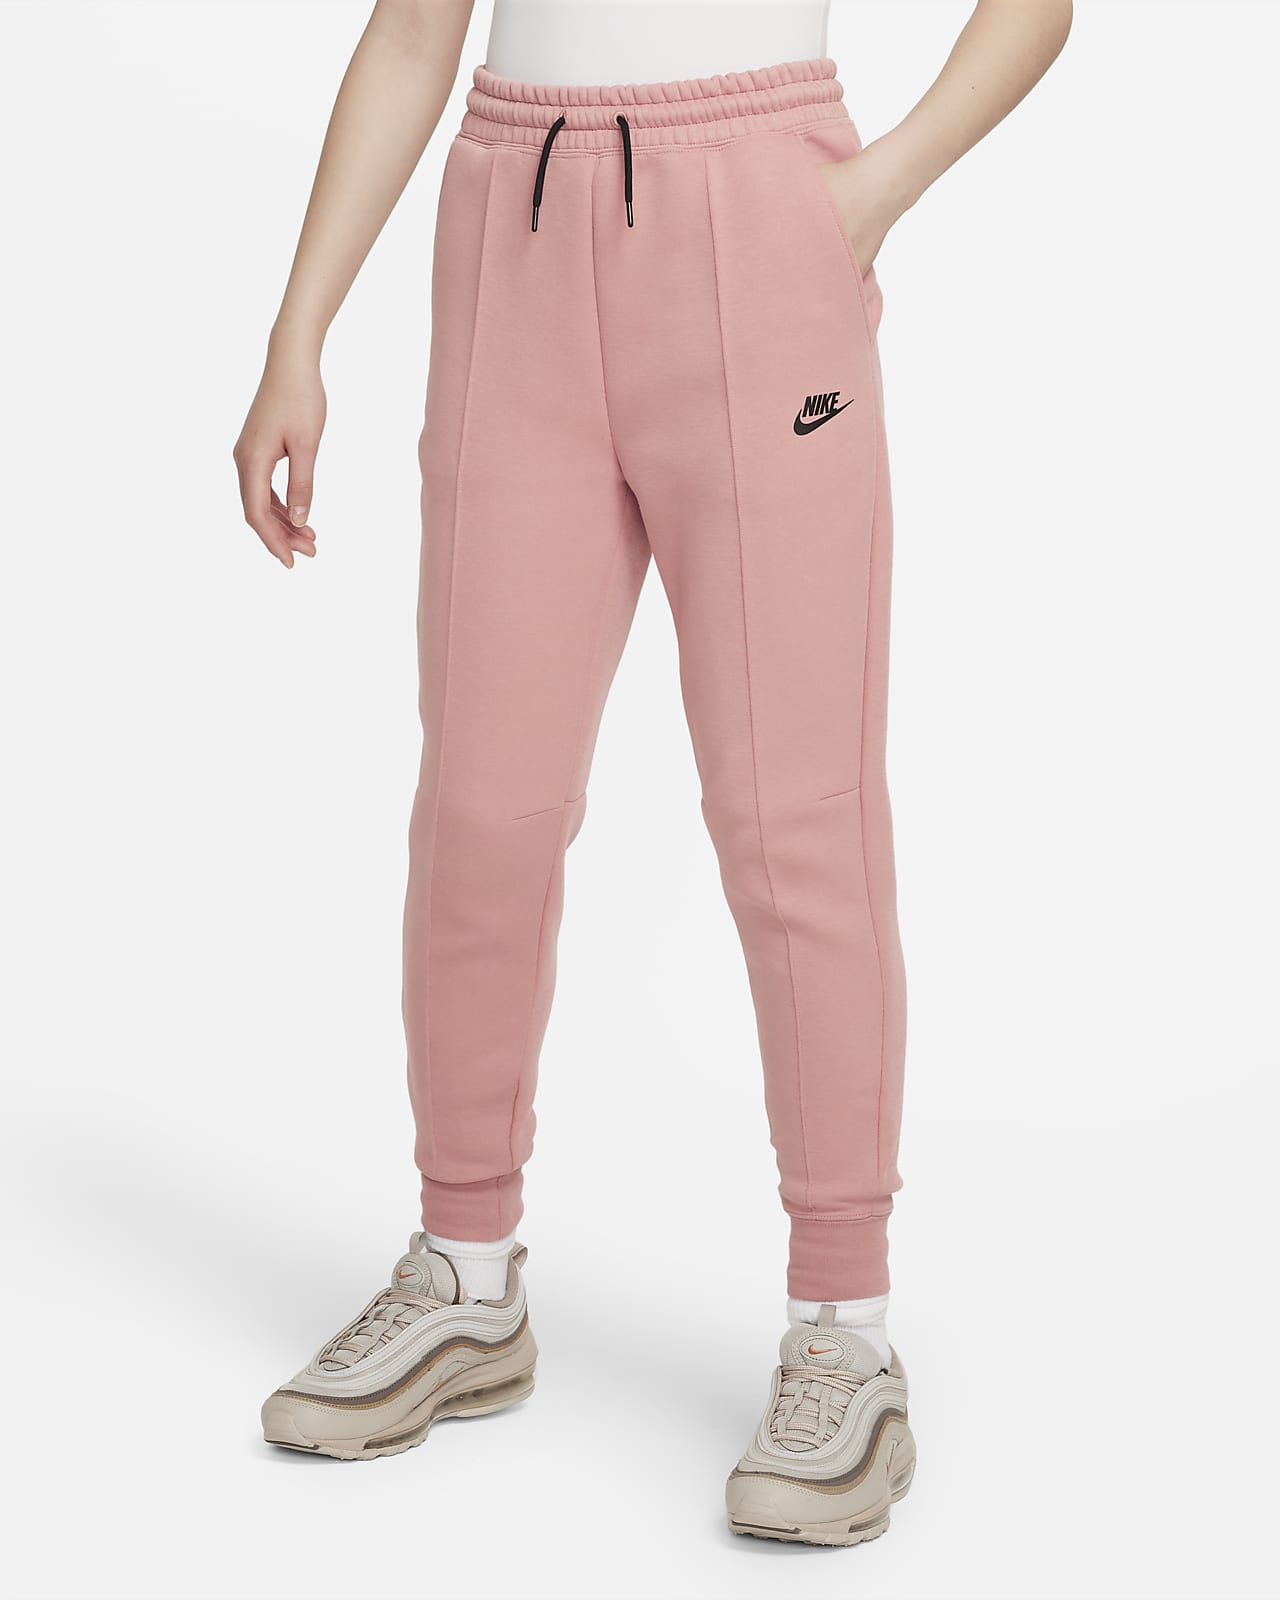 Correspondent Stuwkracht Kijkgat Nike Sportswear Tech Fleece joggingbroek voor meisjes. Nike BE